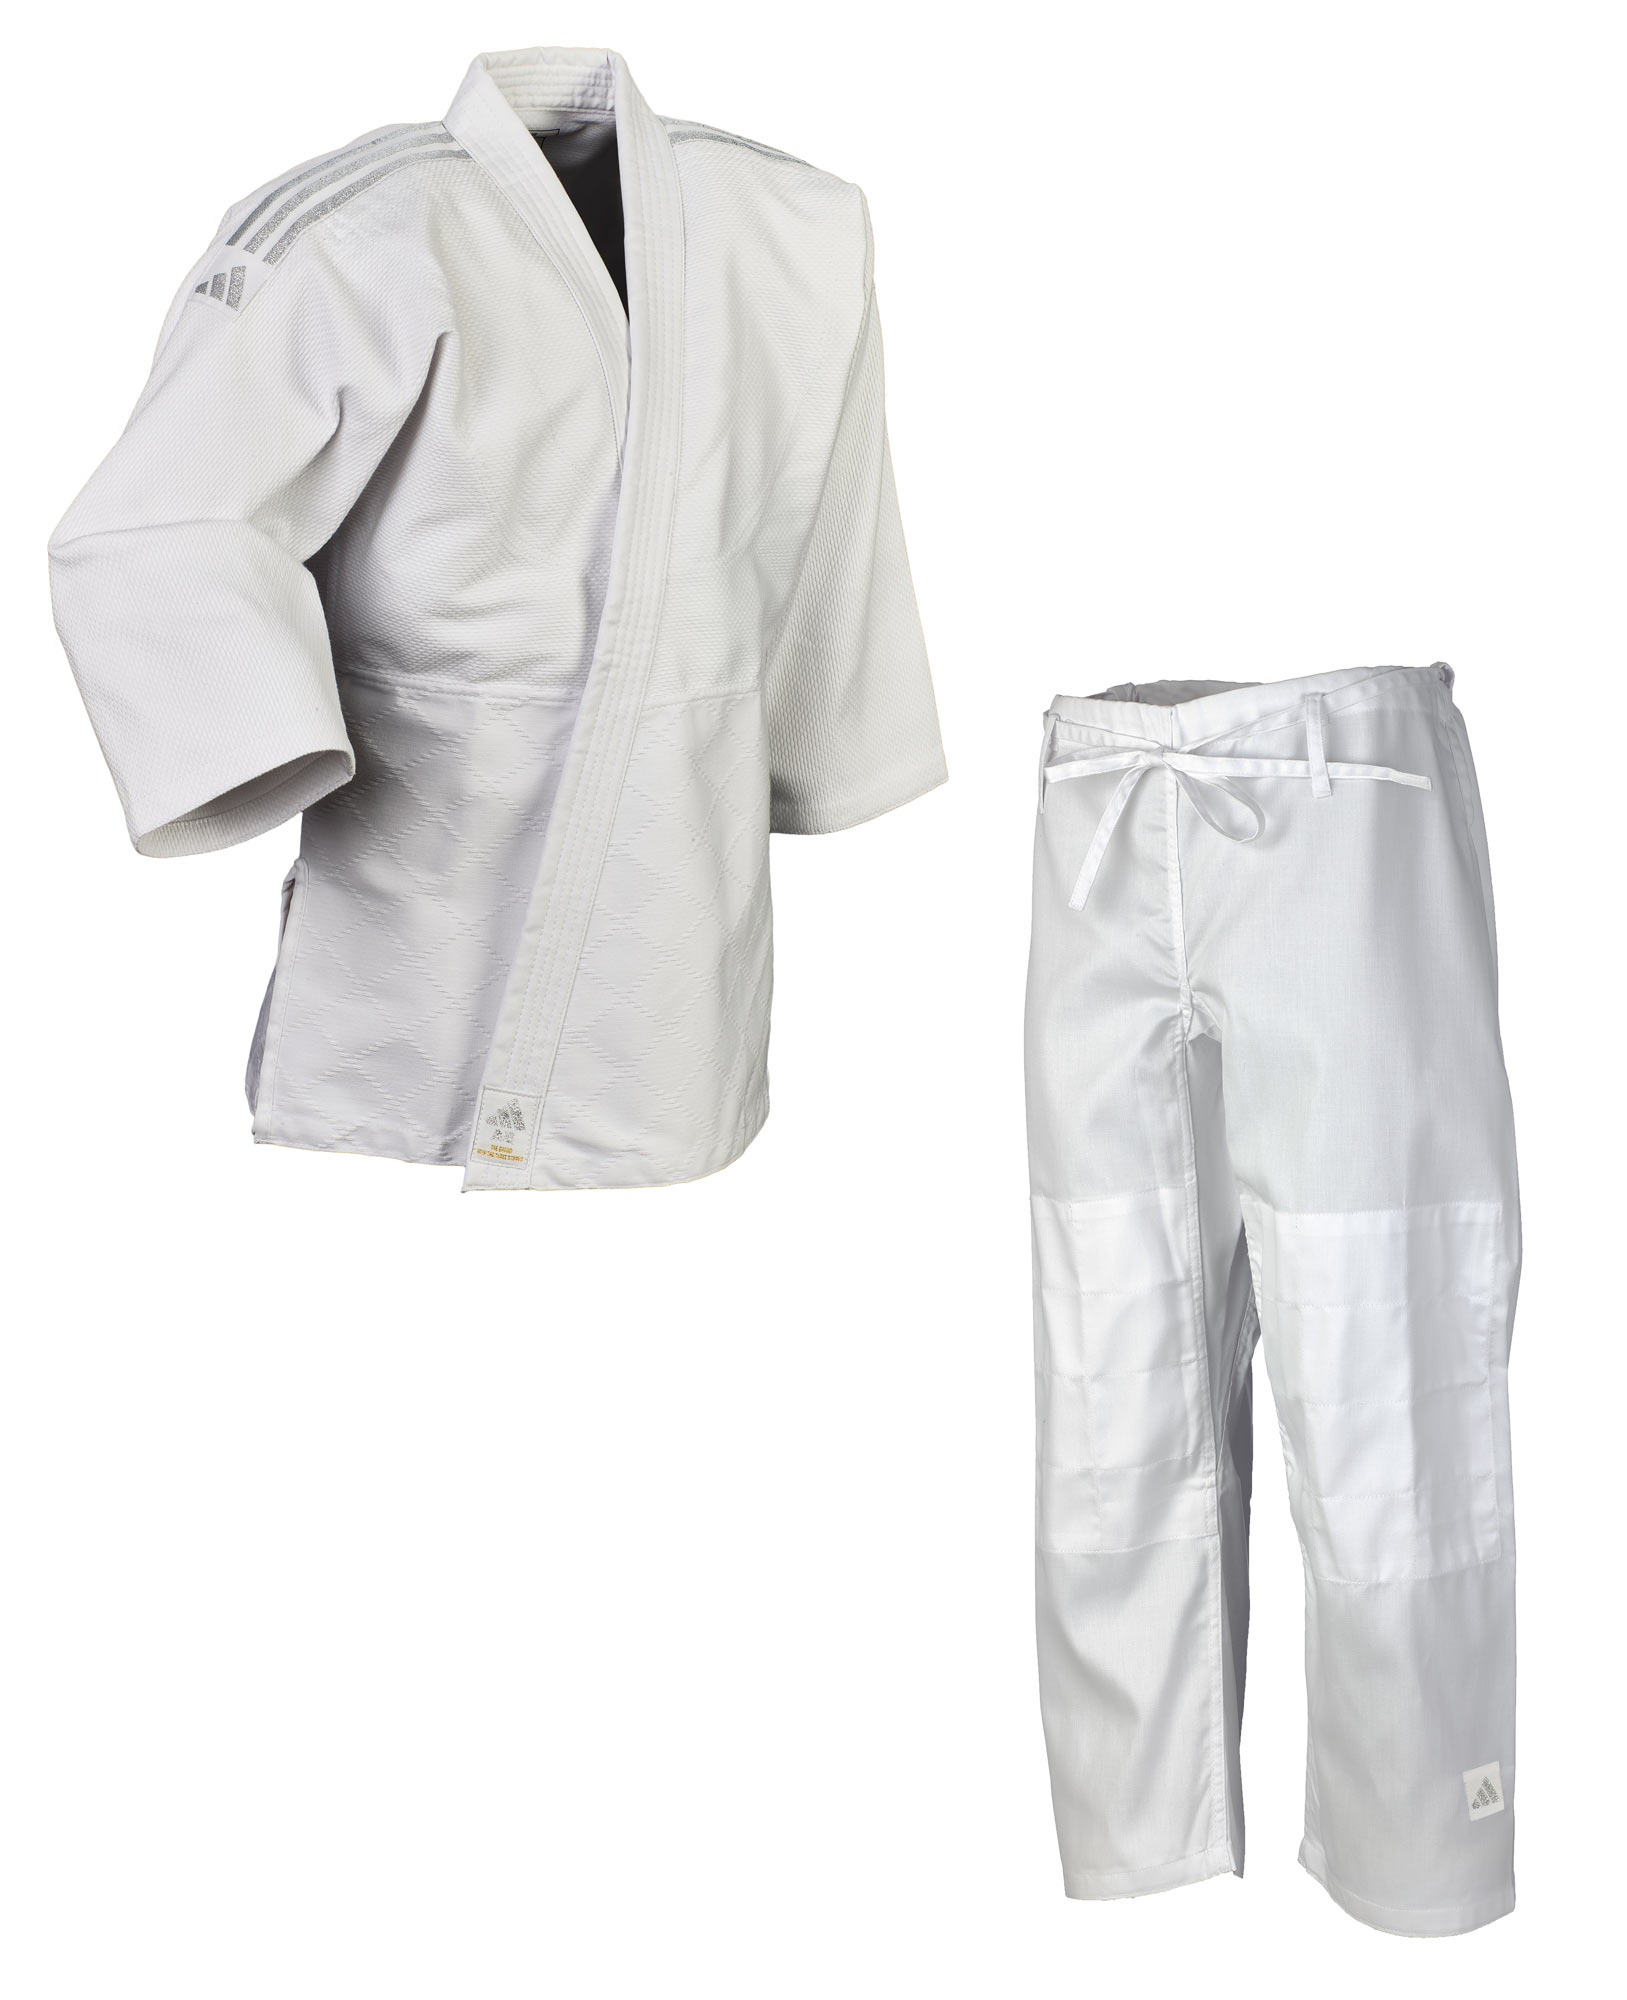 adidas Judo-Anzug Club weiß/silver, J350